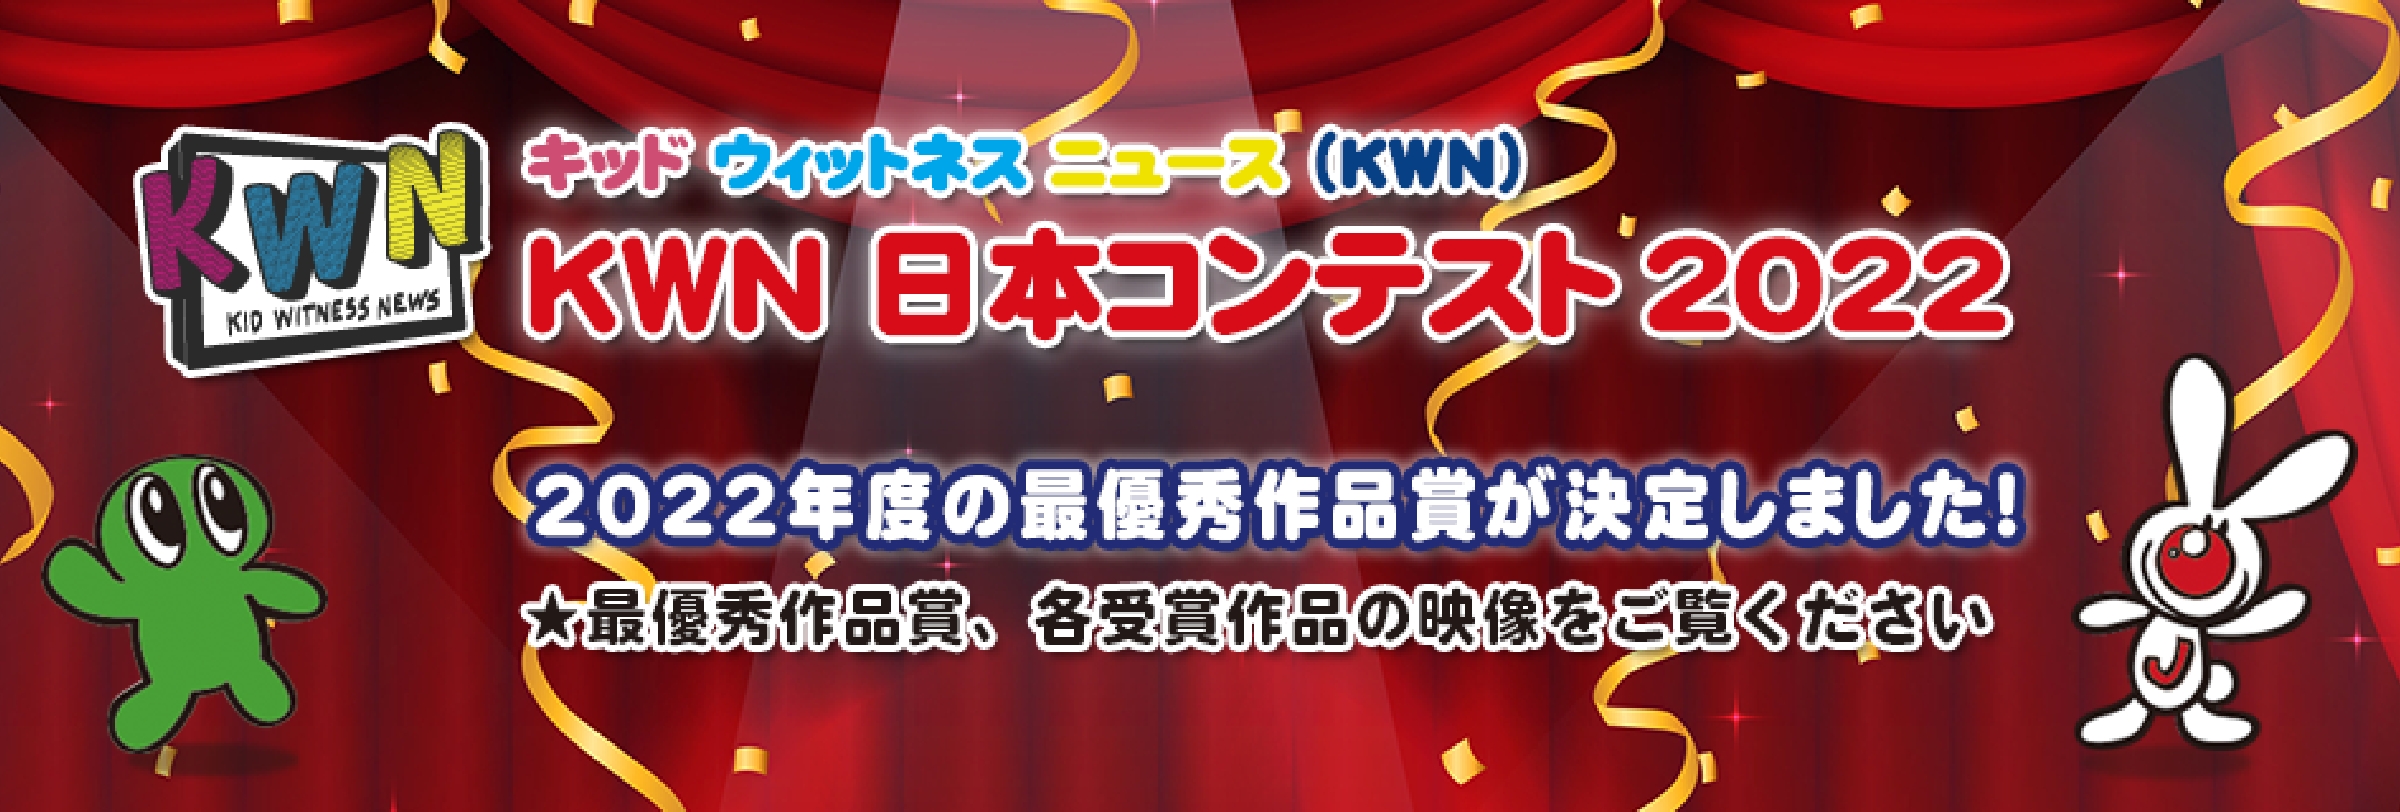 キッド・ウィットネス・ニュース(KWN) KWN 日本コンテスト  2022年度の最優秀作品賞が決定しました！ ★最優秀作品賞、各受賞作品の映像をご覧ください。